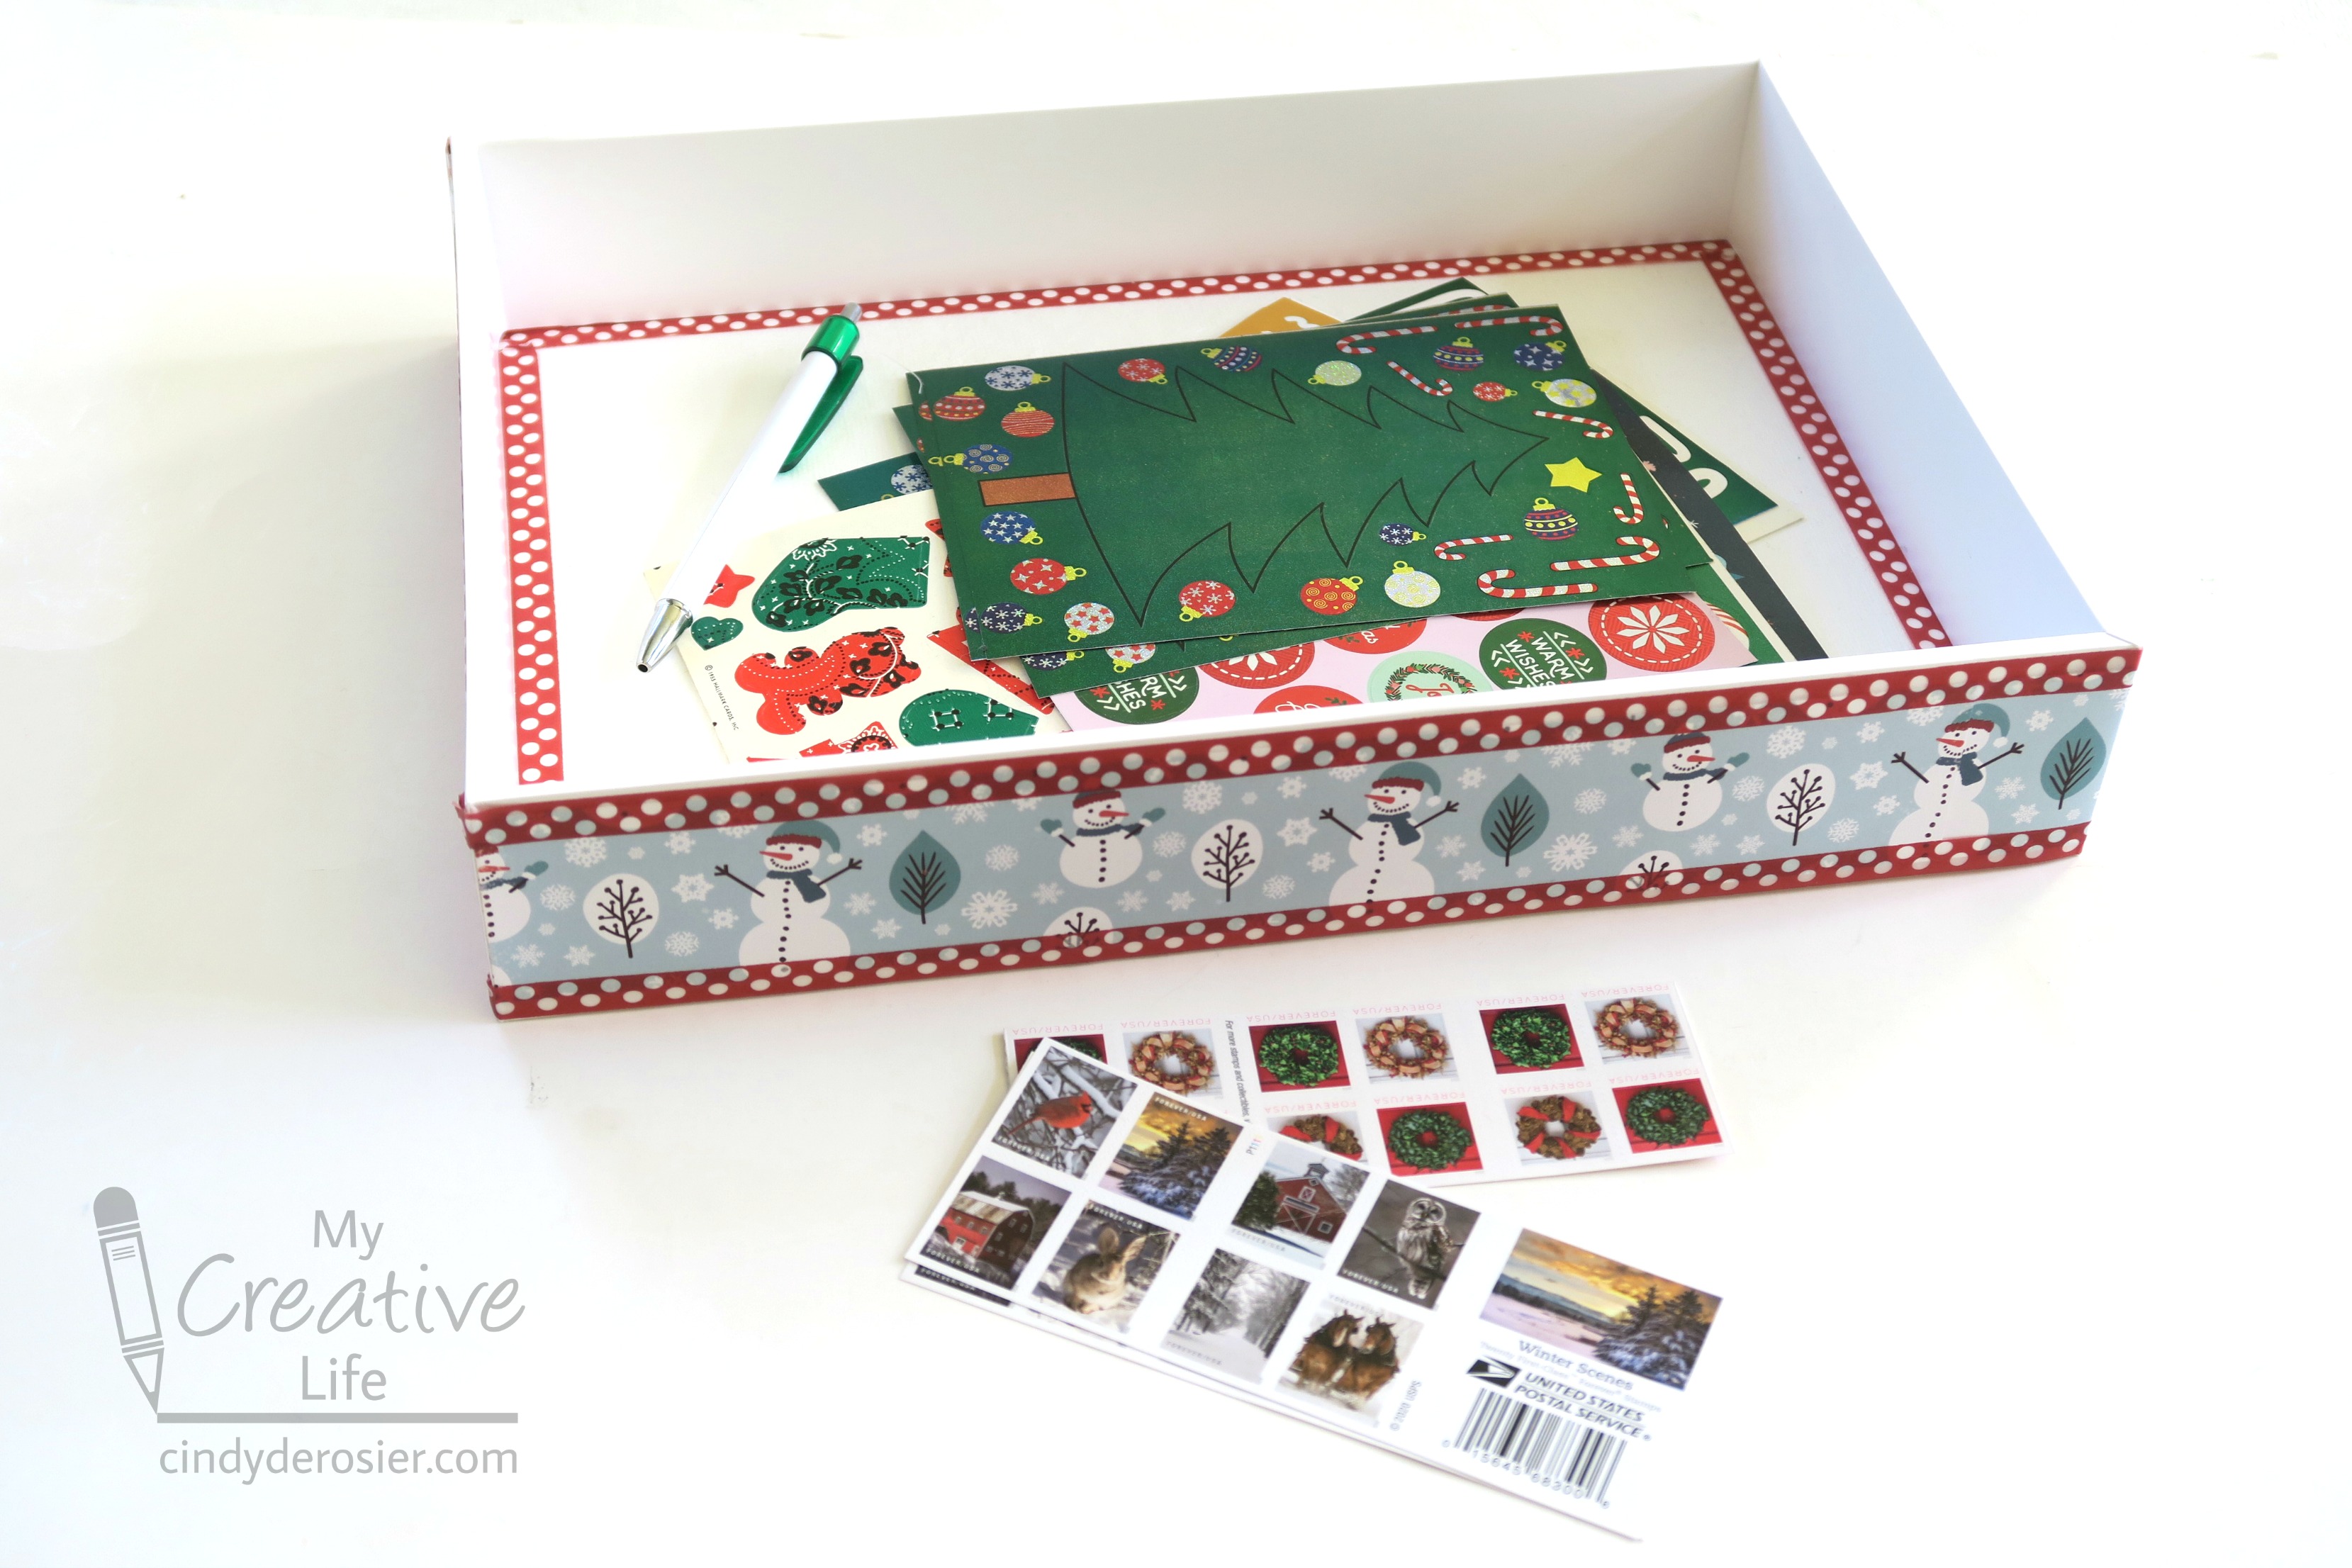 Washi Tape Christmas Cards - Organized Life Design : Organized Life Design